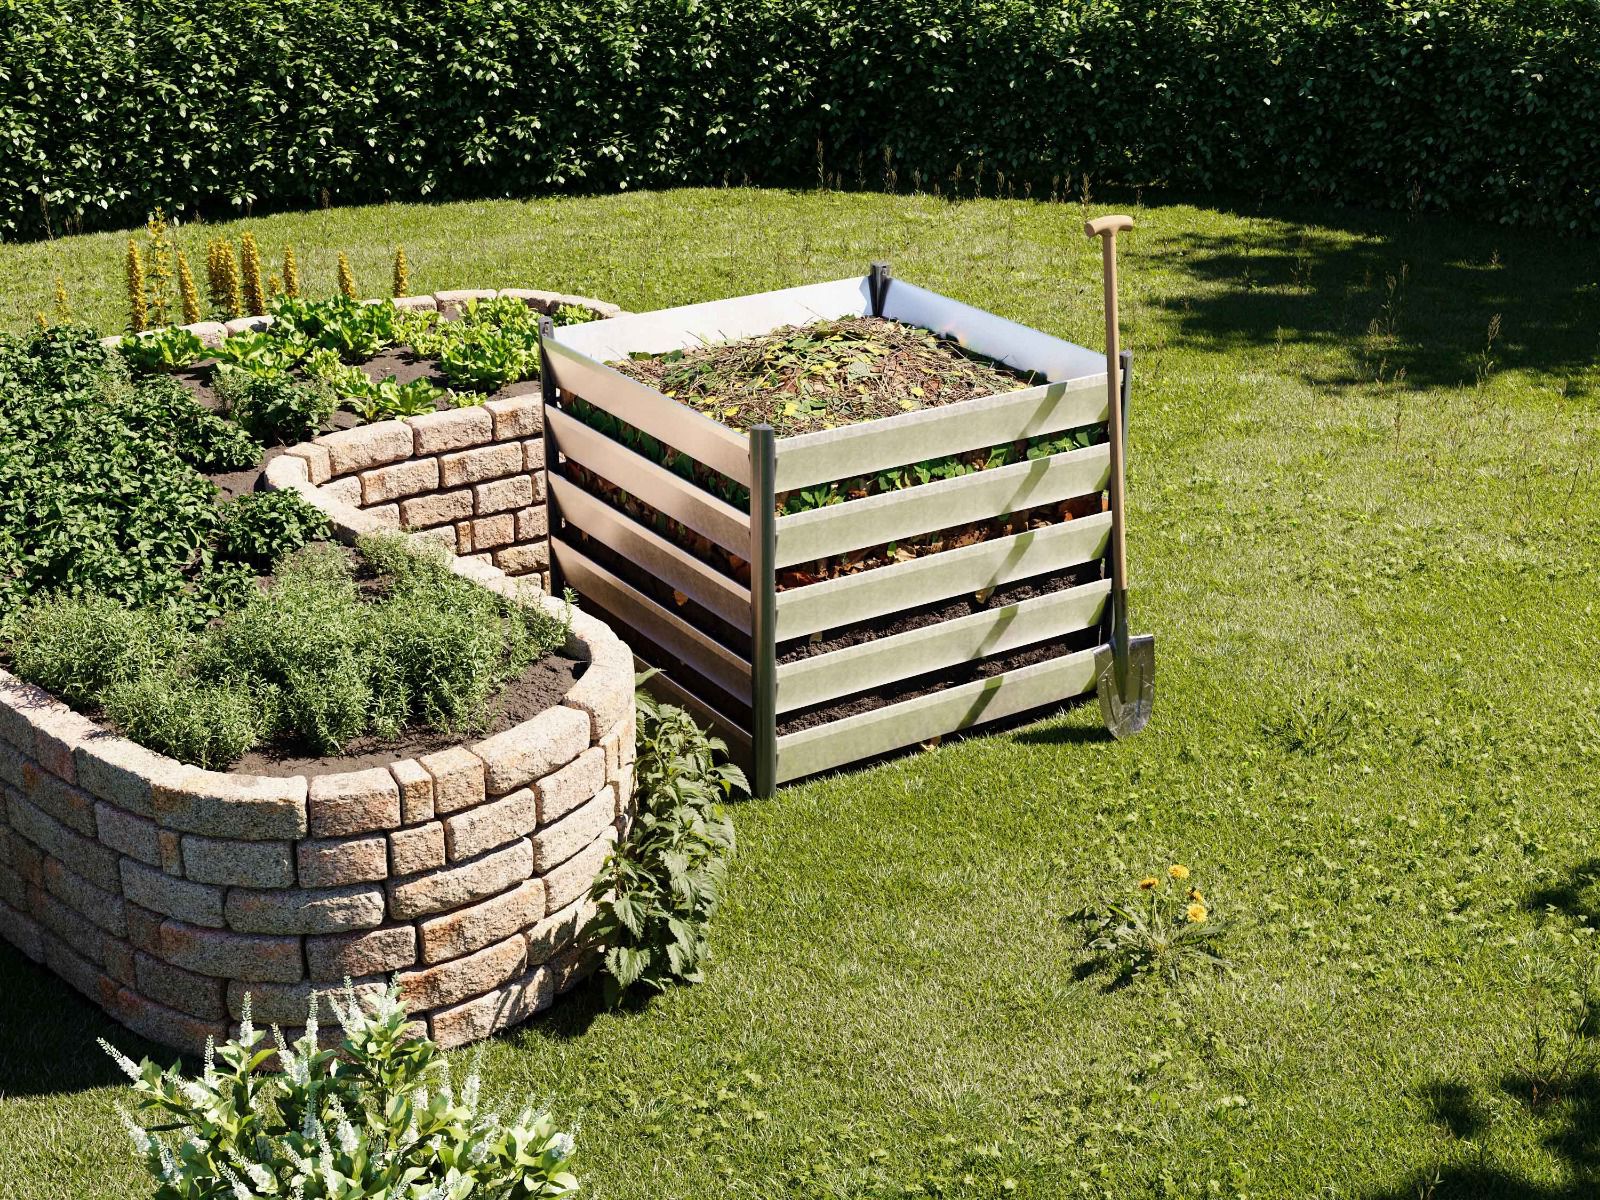 Ein Komposter aus Aluminium Natur, 110x110 cm, langlebig, stabil und die ideale Lösung für eine umweltfreundliche Gartenkompostierung.